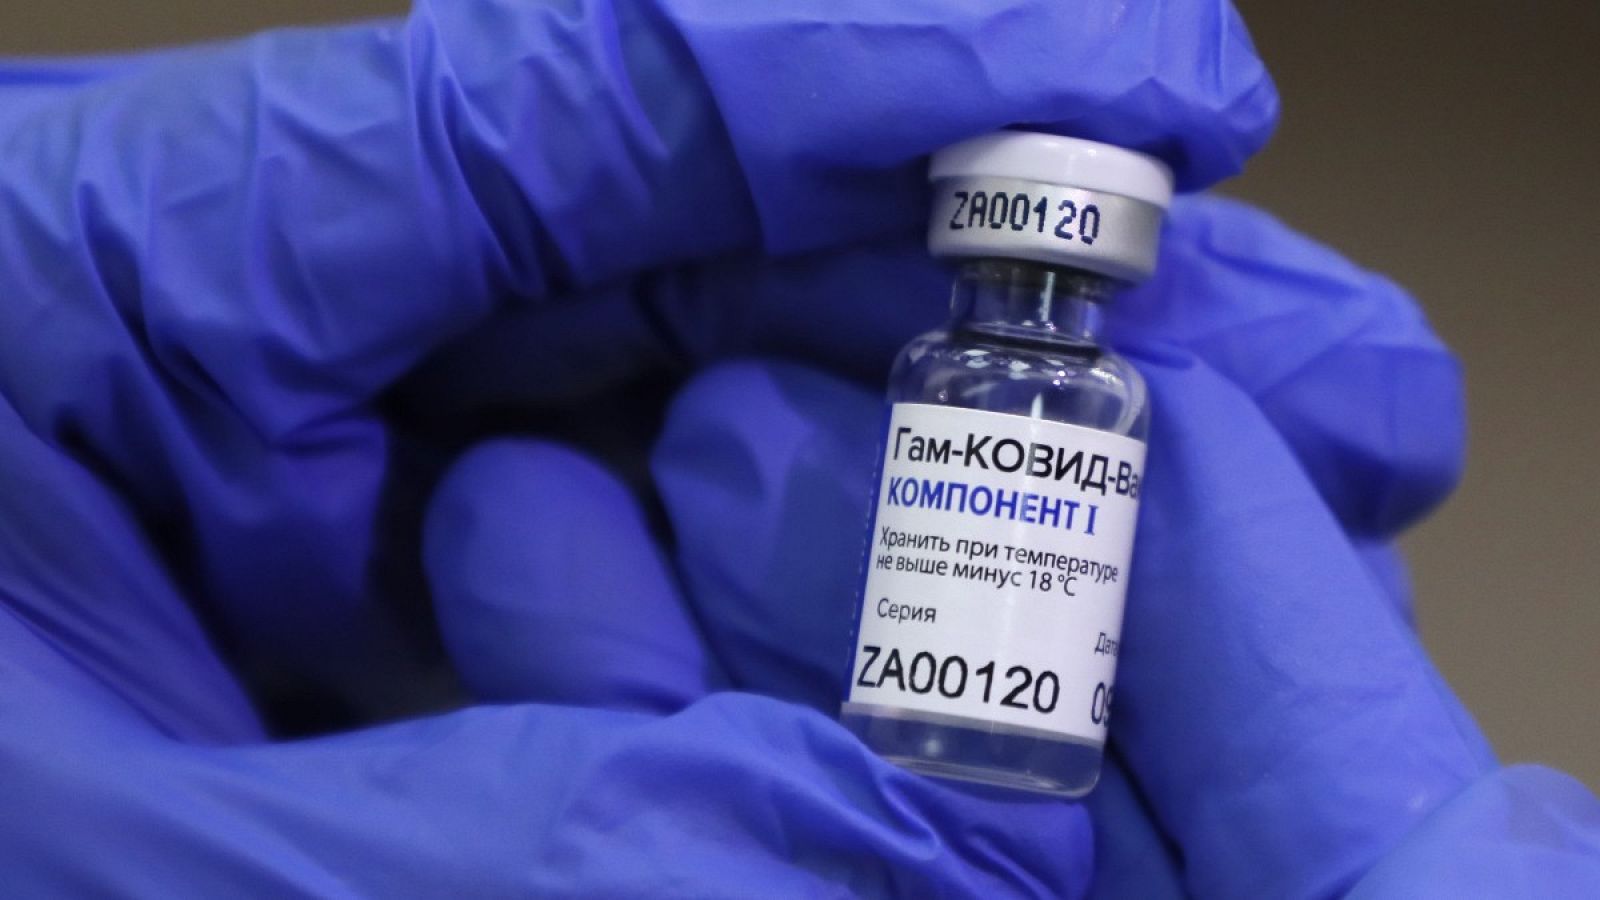 Coronavirus | Arranca la campaña de vacunación masiva contra la COVID-19 en Rusia